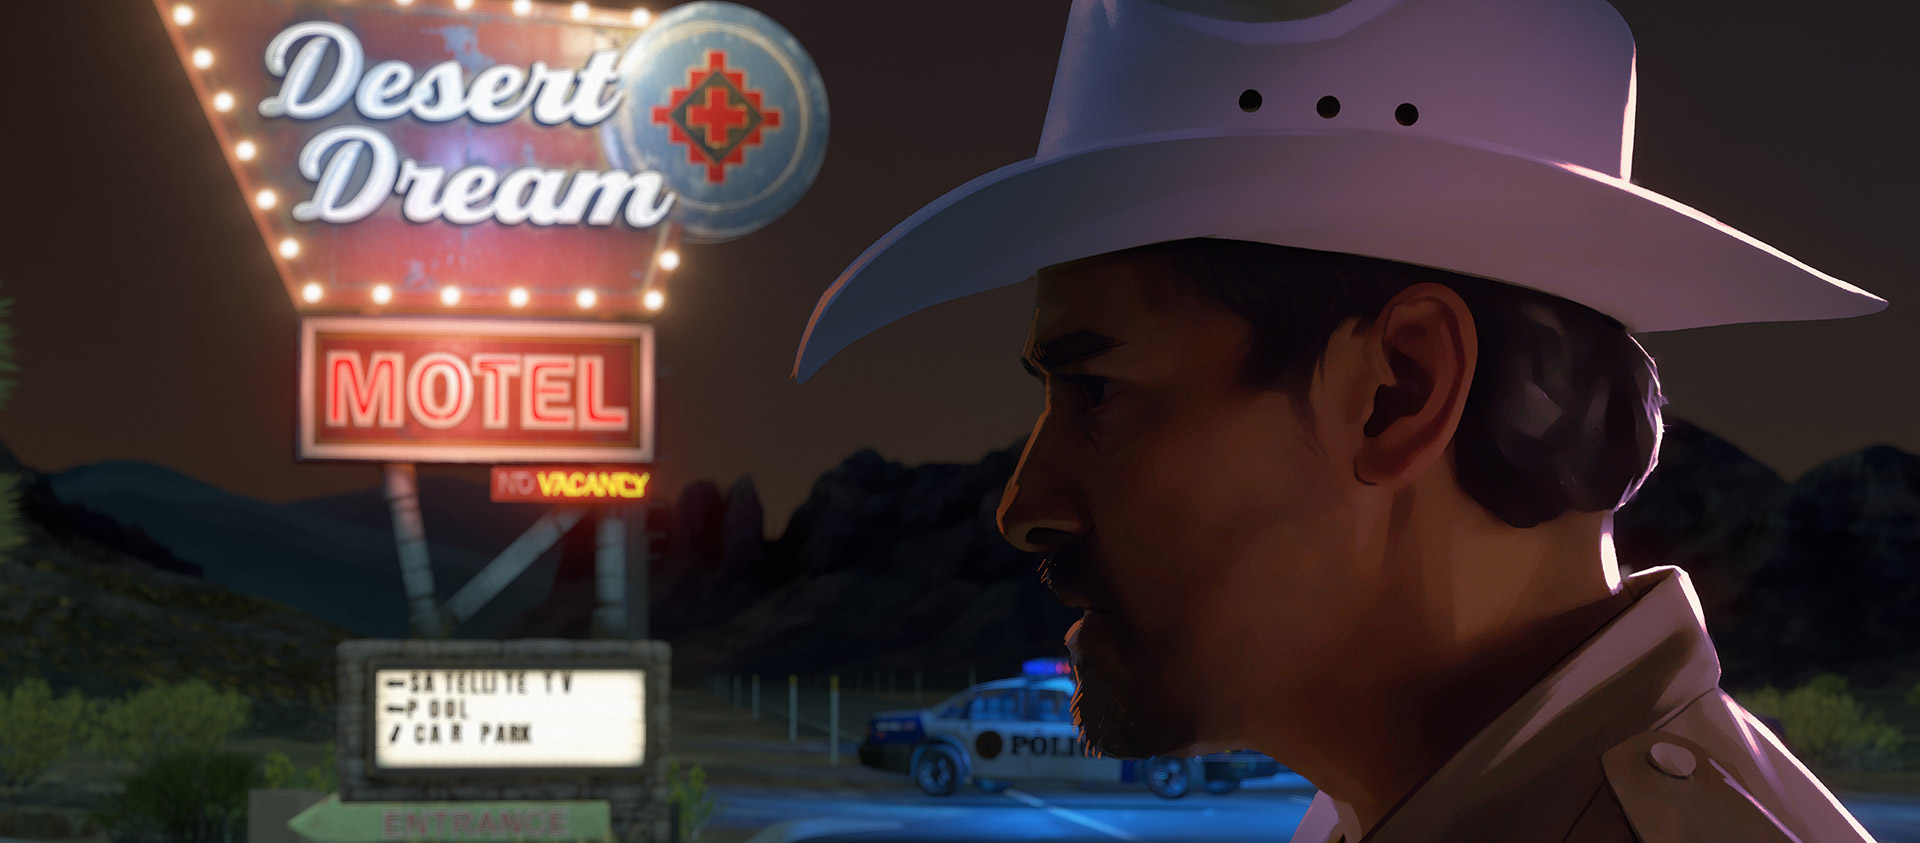 Een agent met een cowboyhoed staat onder een neonverlicht motelbord.